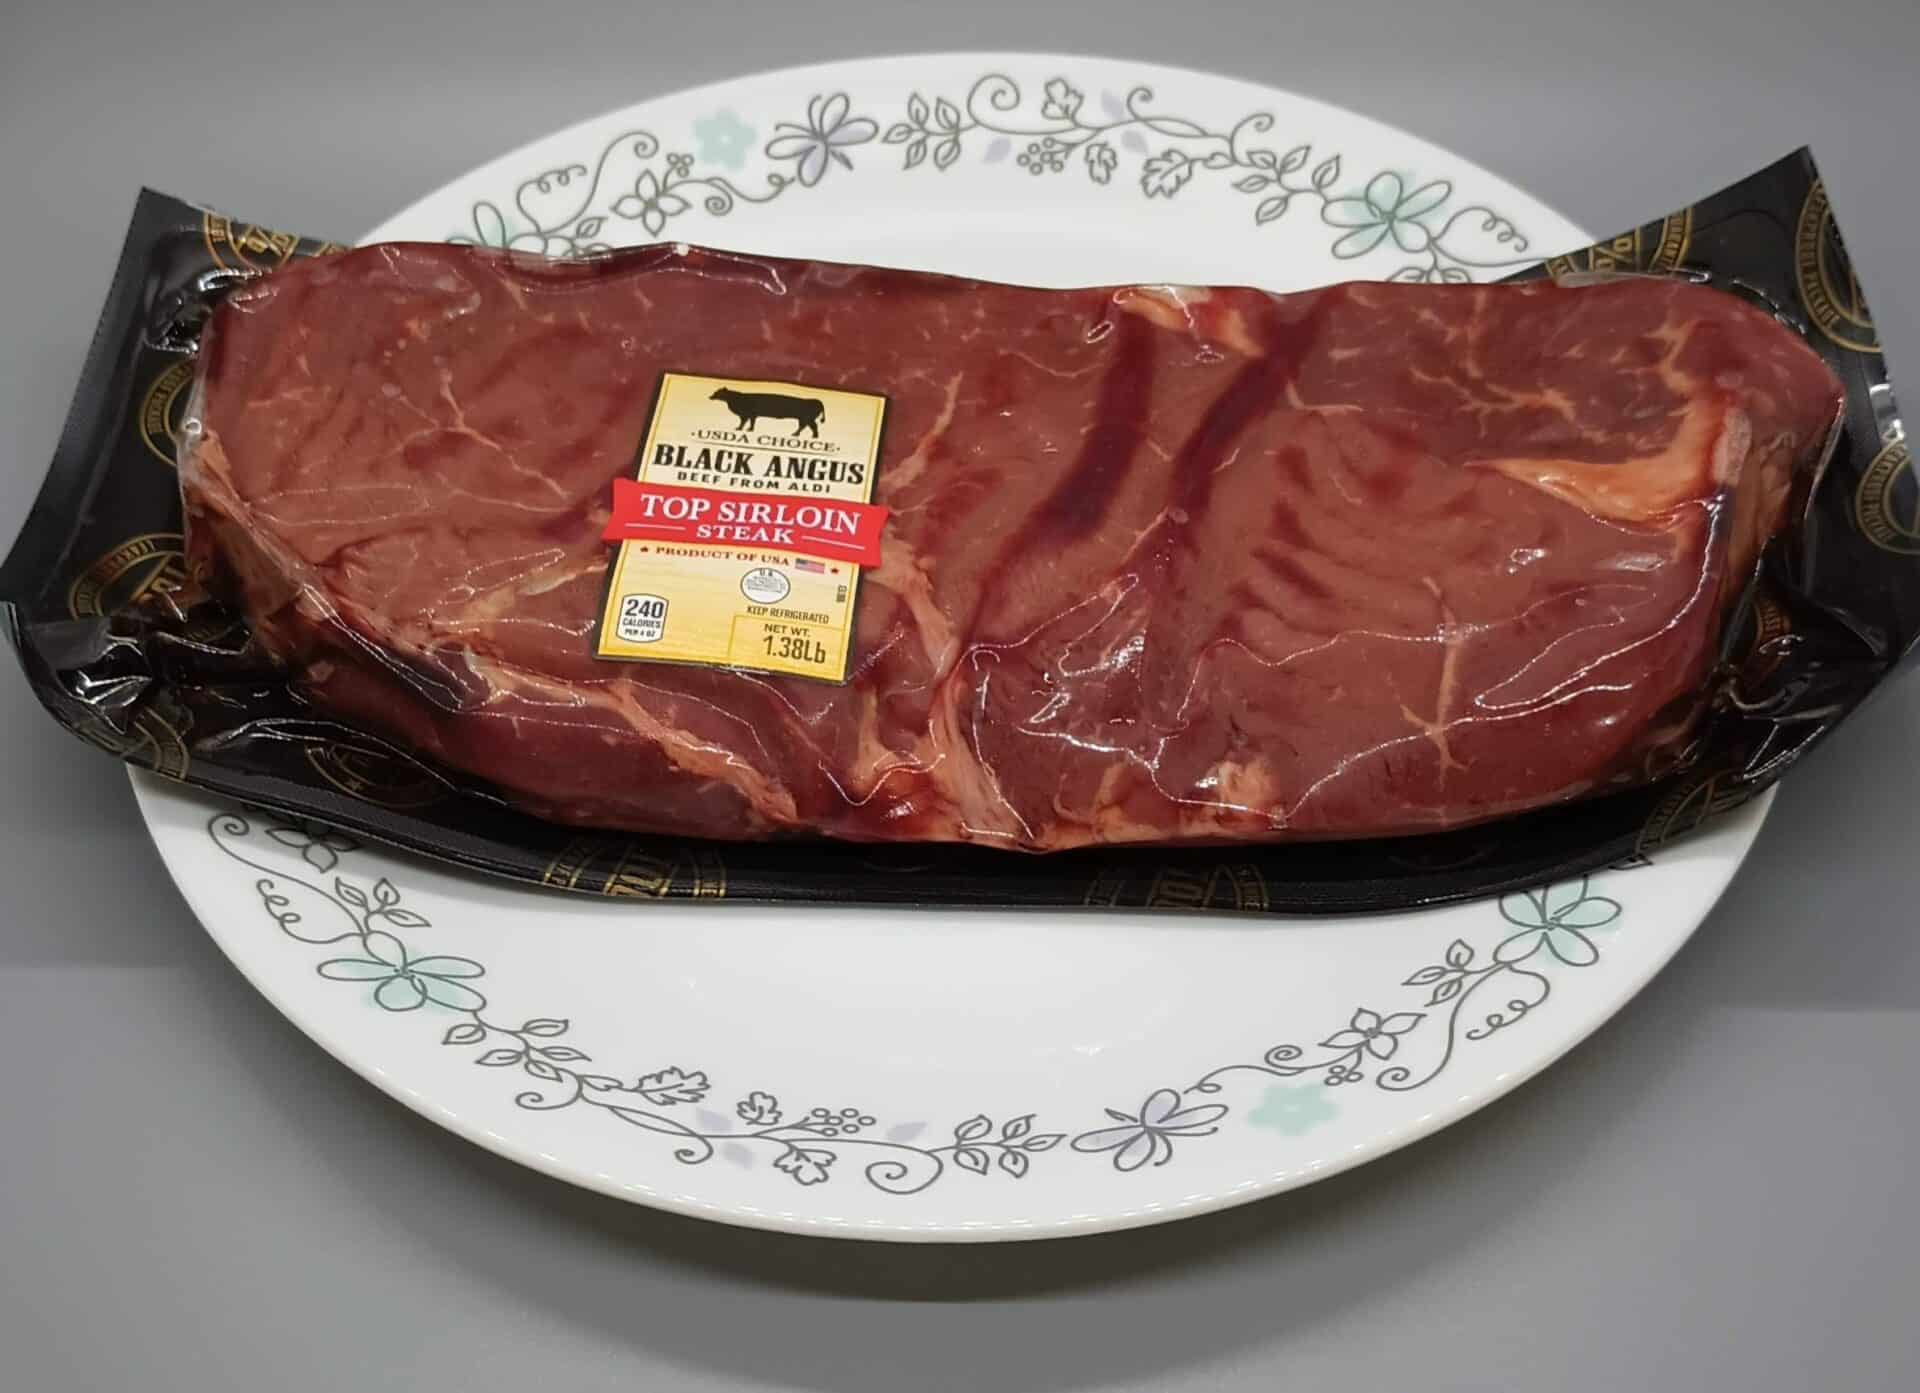 USDA Choice Black Angus Top Sirloin Steak